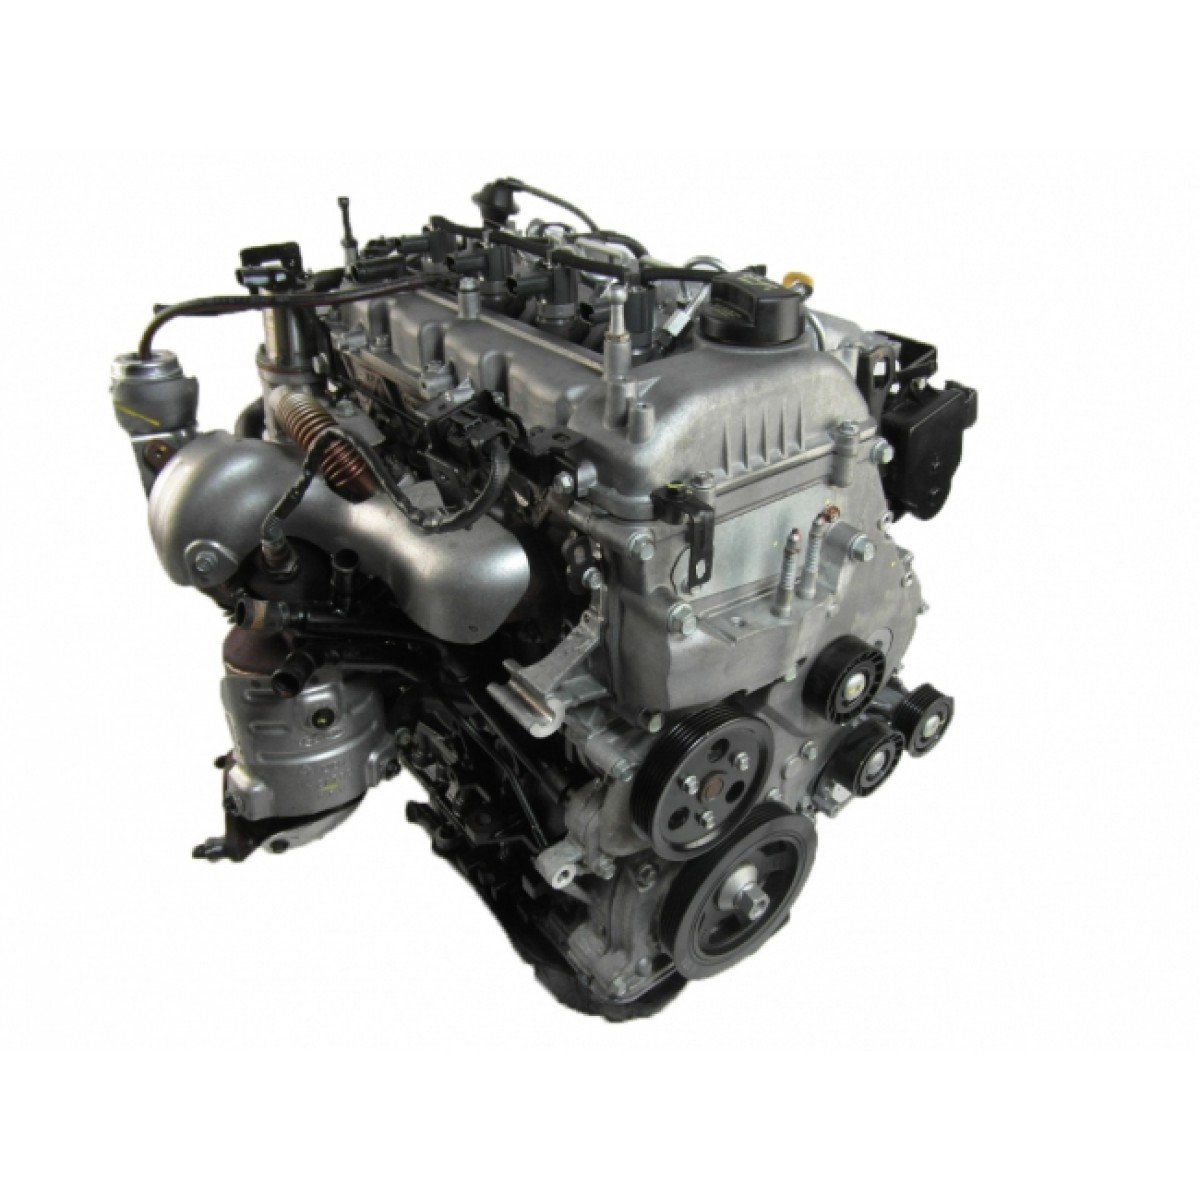 Масло двигателя хендай старекс. Двигатель Hyundai i30 1.6 дизель. D4fb 1.6 CRDI. Двигатель Киа СИД 1.6 дизель. Двигатель Киа дизель 1.4.